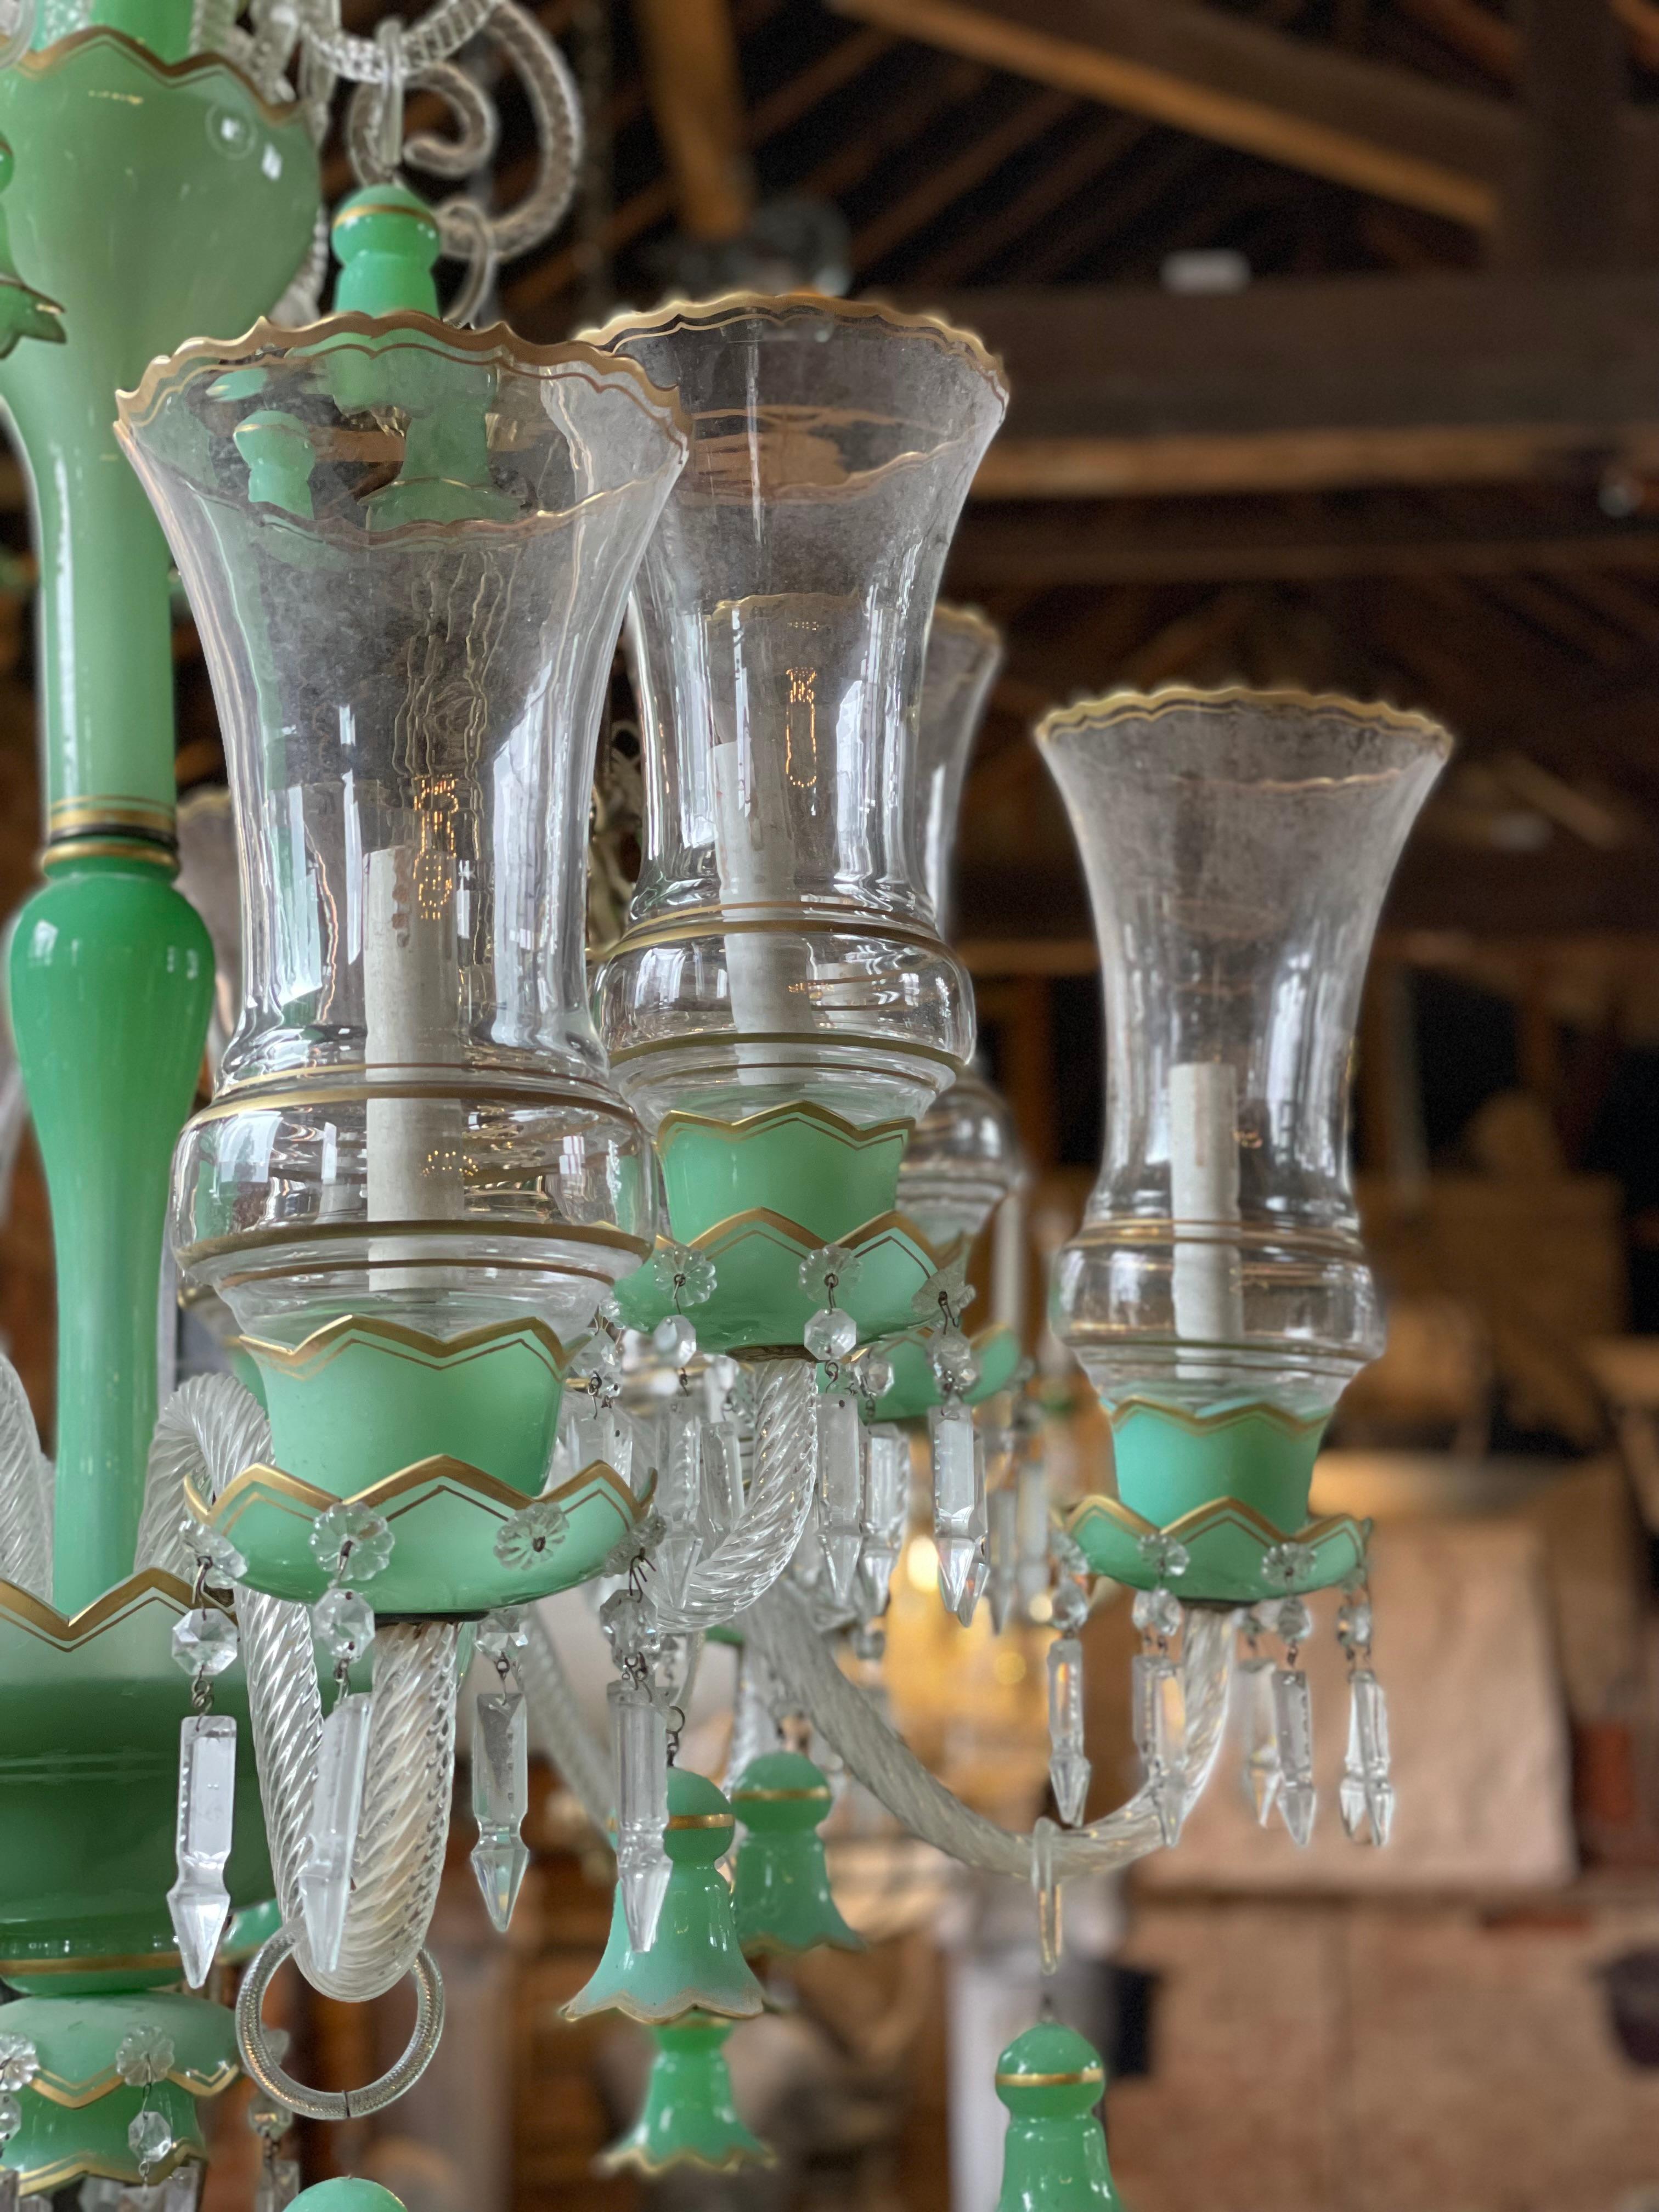 Lustre à 12 bras de lumière en verre vert de Bohème du 19e siècle.

Ce modèle est très populaire sur le marché du Moyen-Orient.